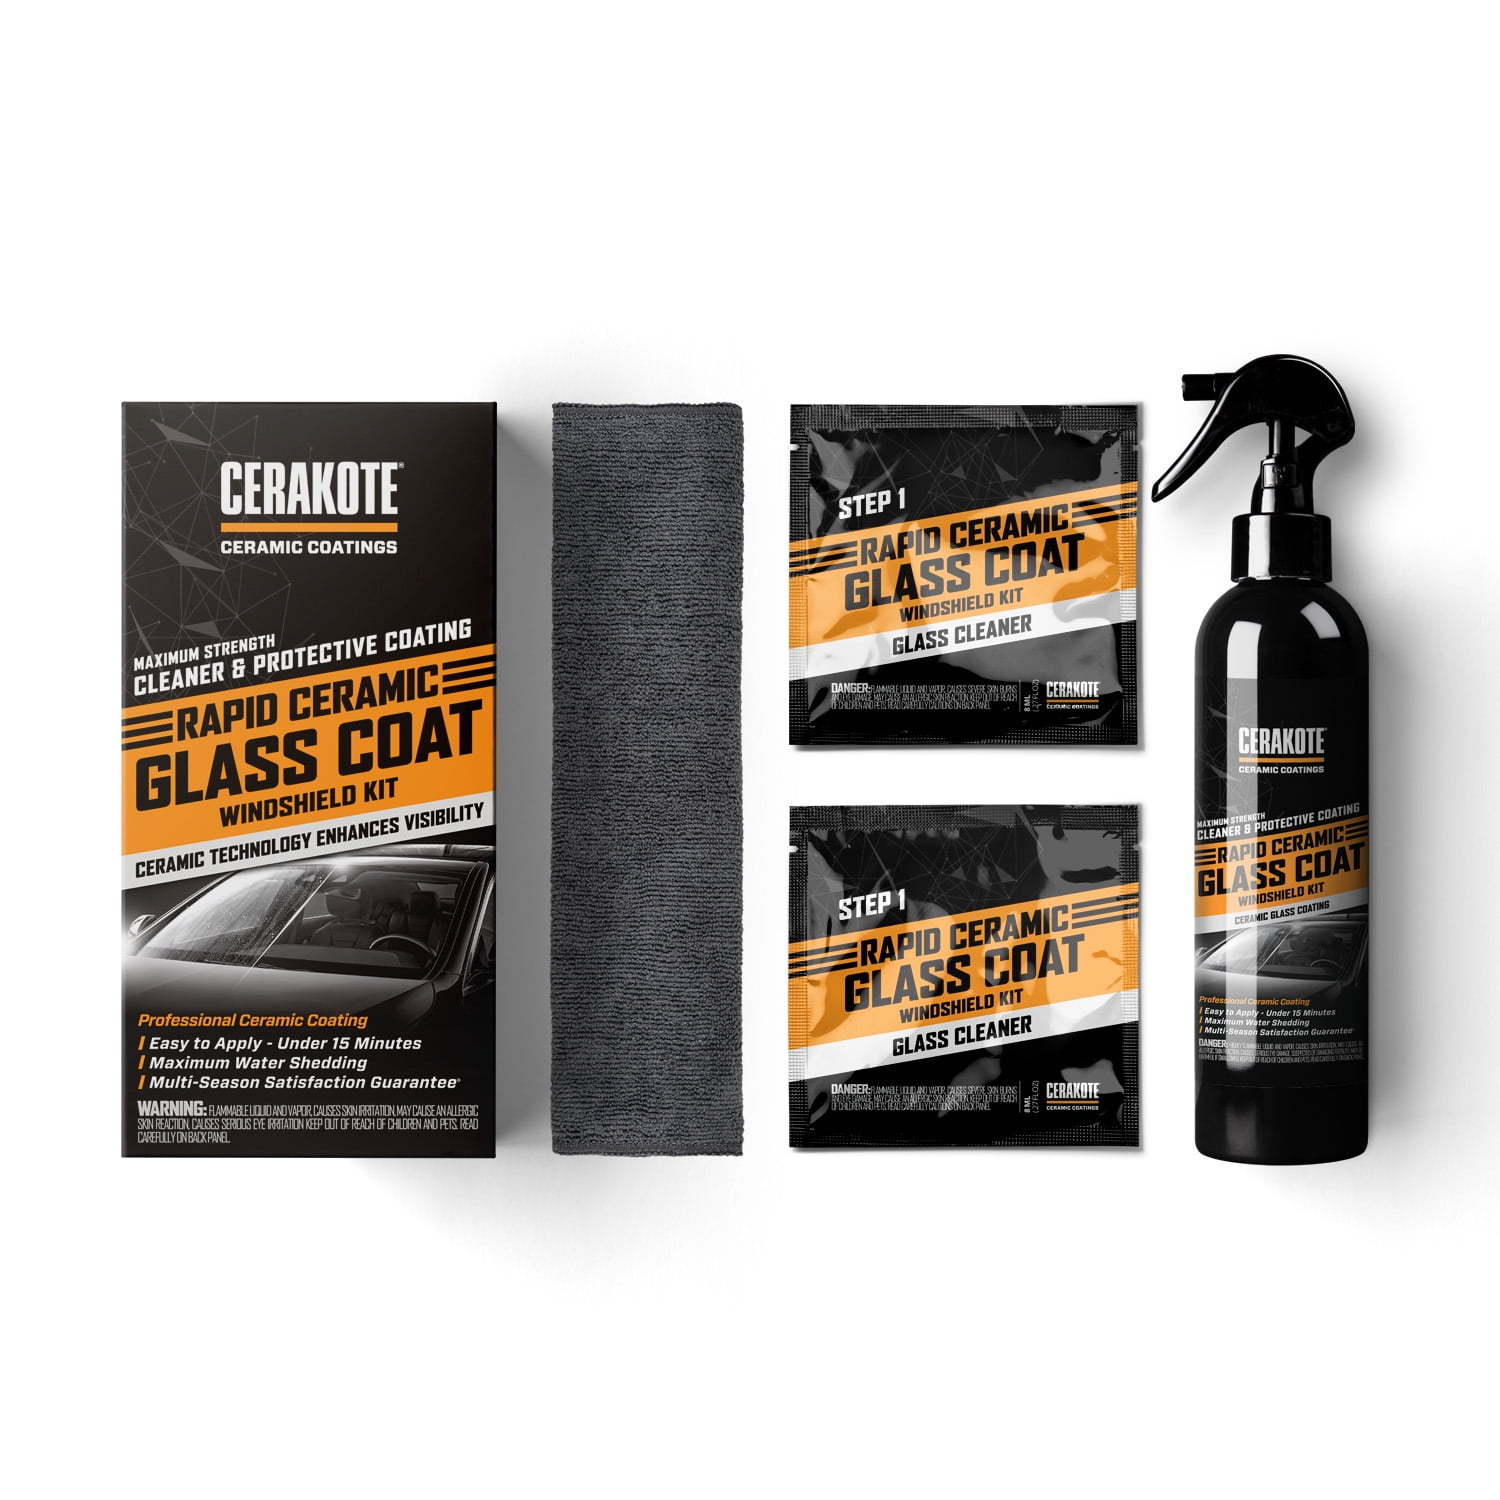 CERAKOTE® Rapid Ceramic Glass Coat Windshield Kit (8oz Bottle